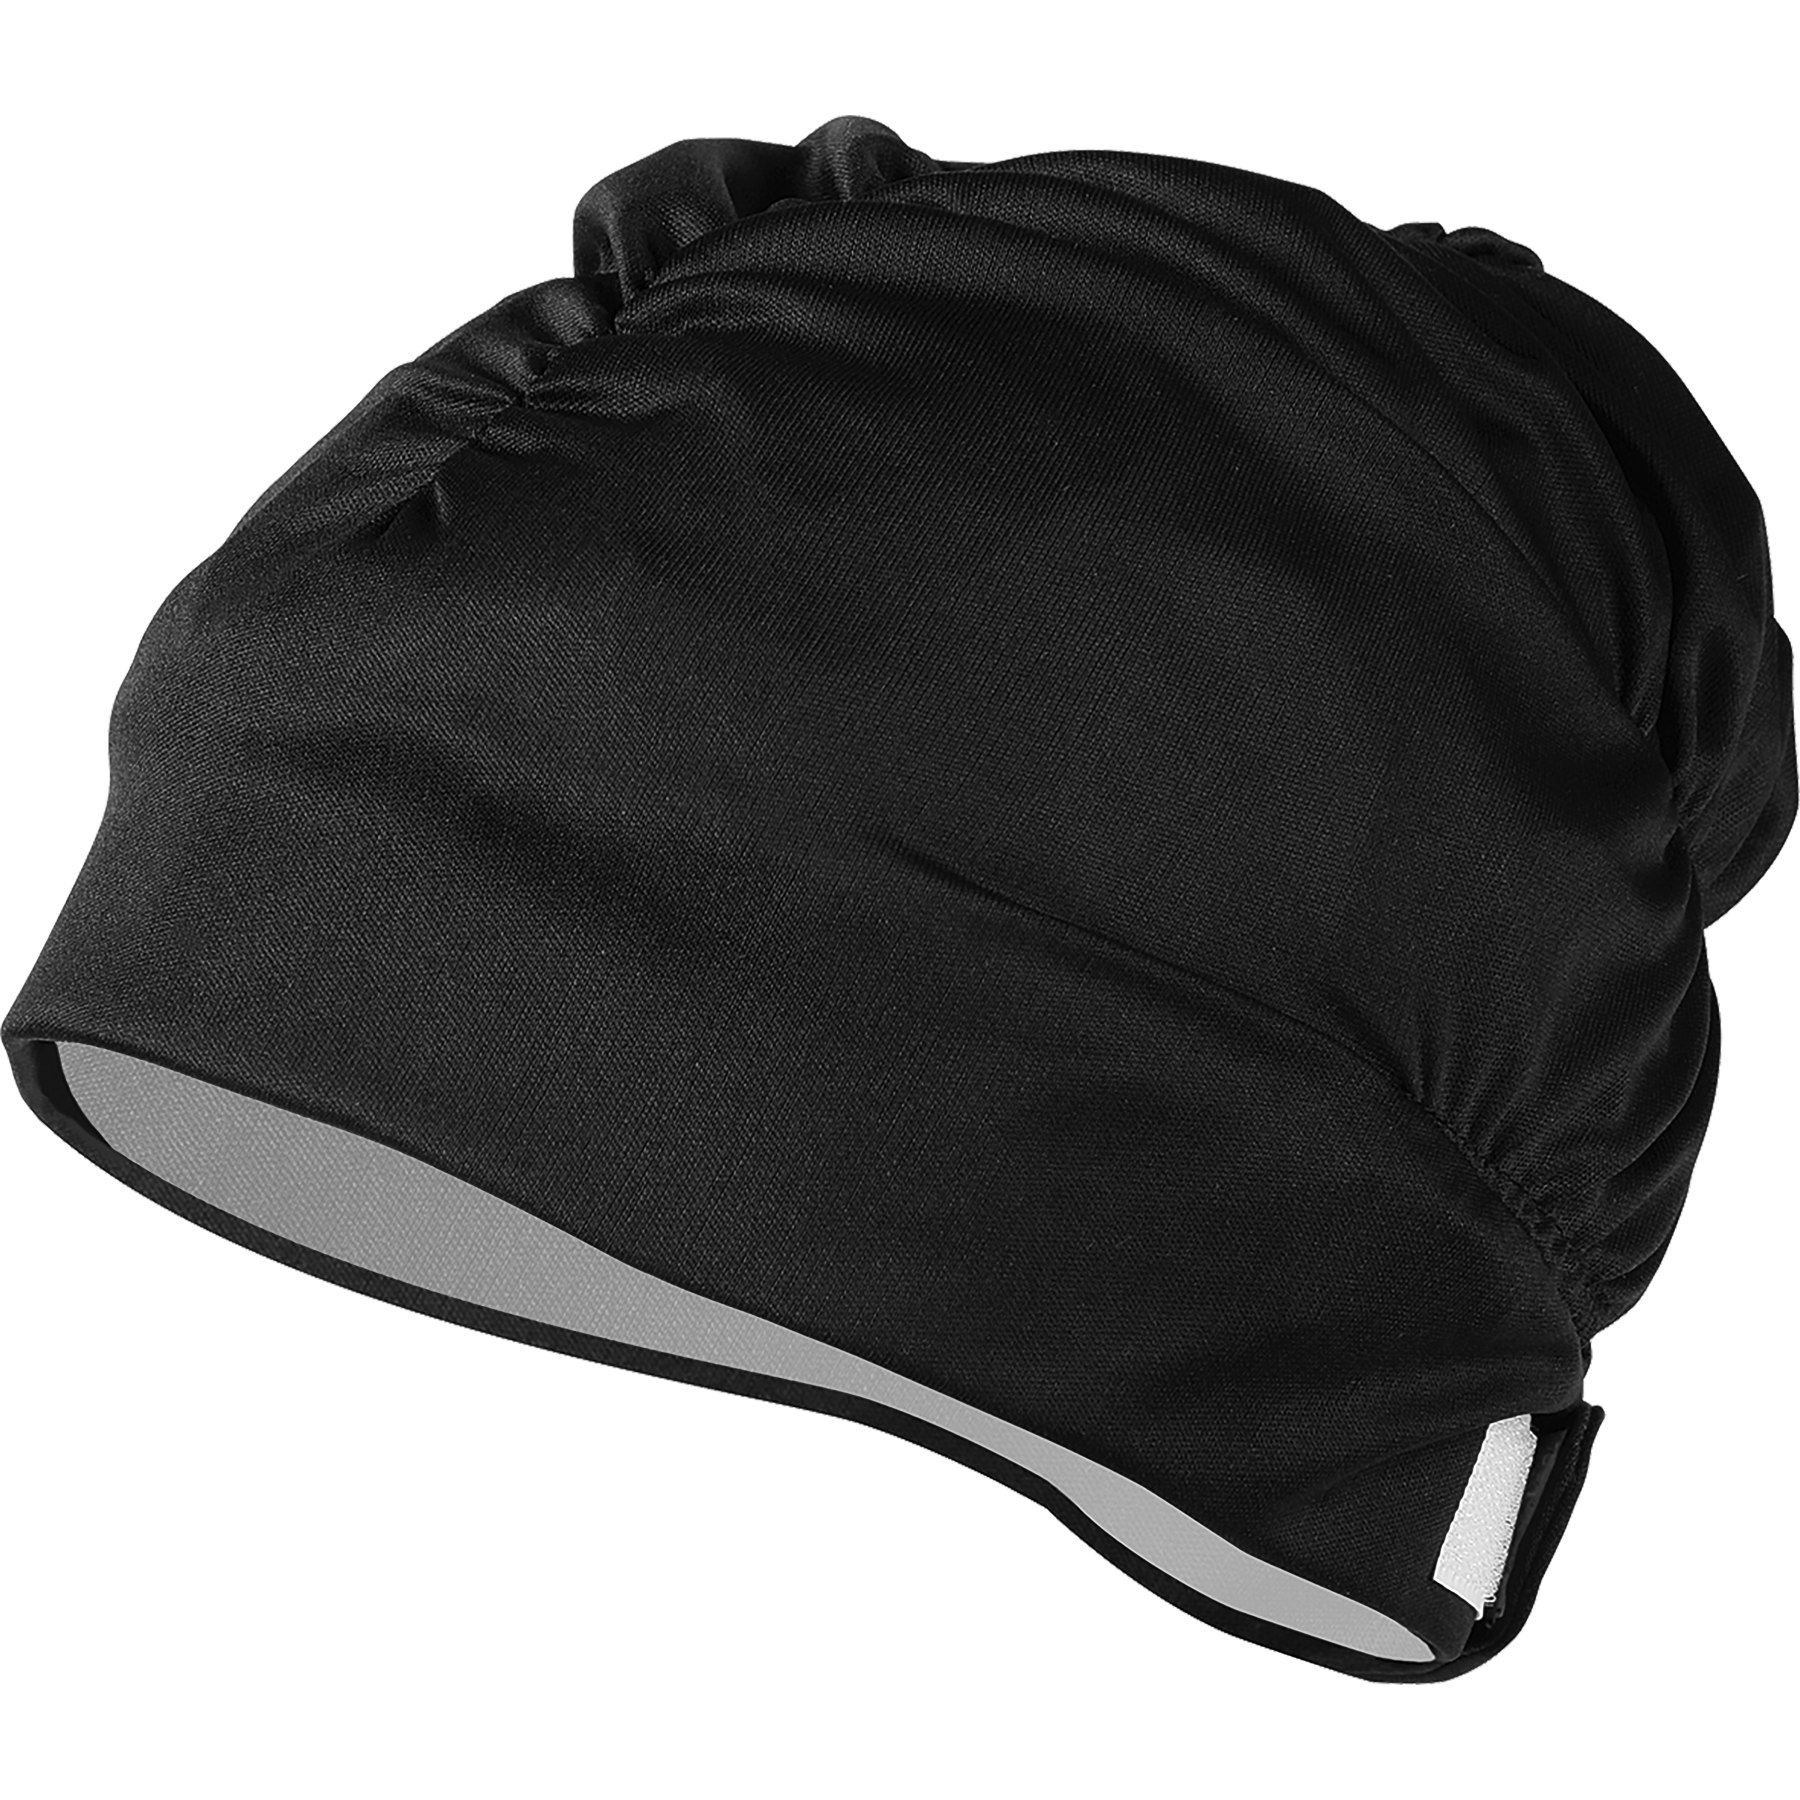 Image of AQUASPHERE Aqua Comfort.A Swim Cap - Black/Black